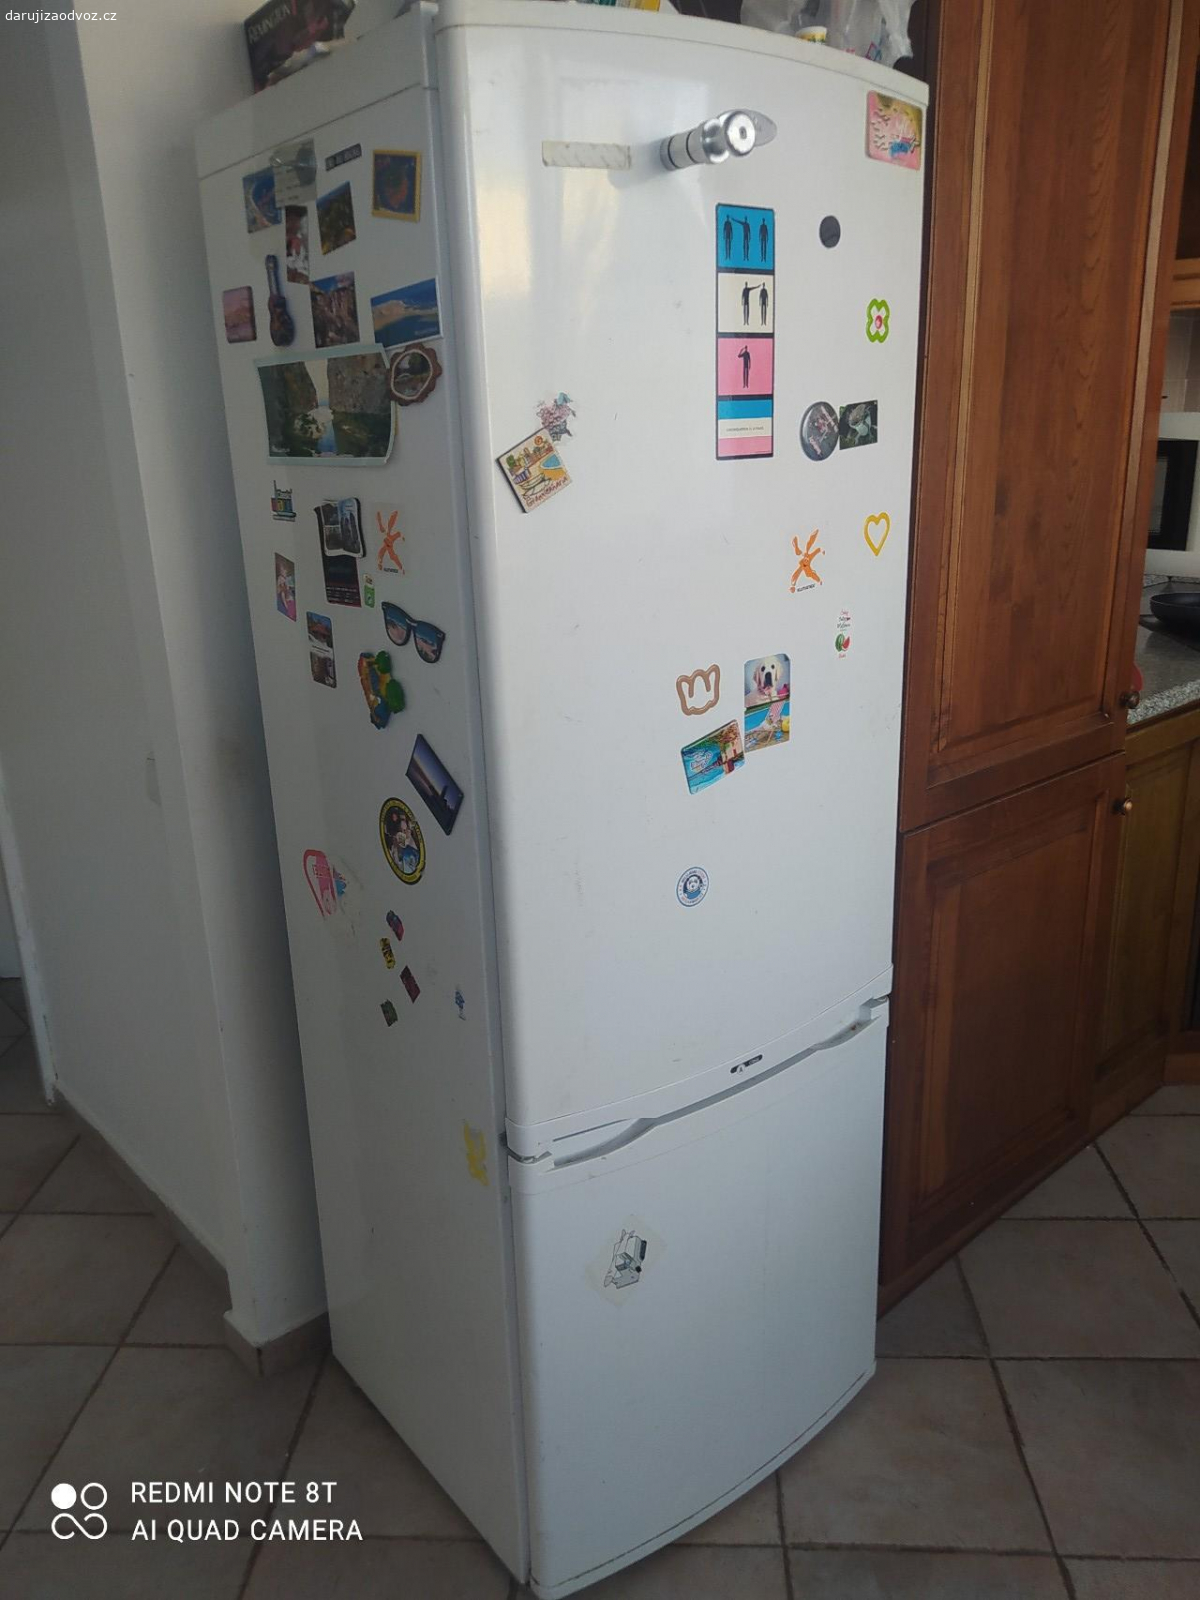 Daruji lednici. starší funkční lednice